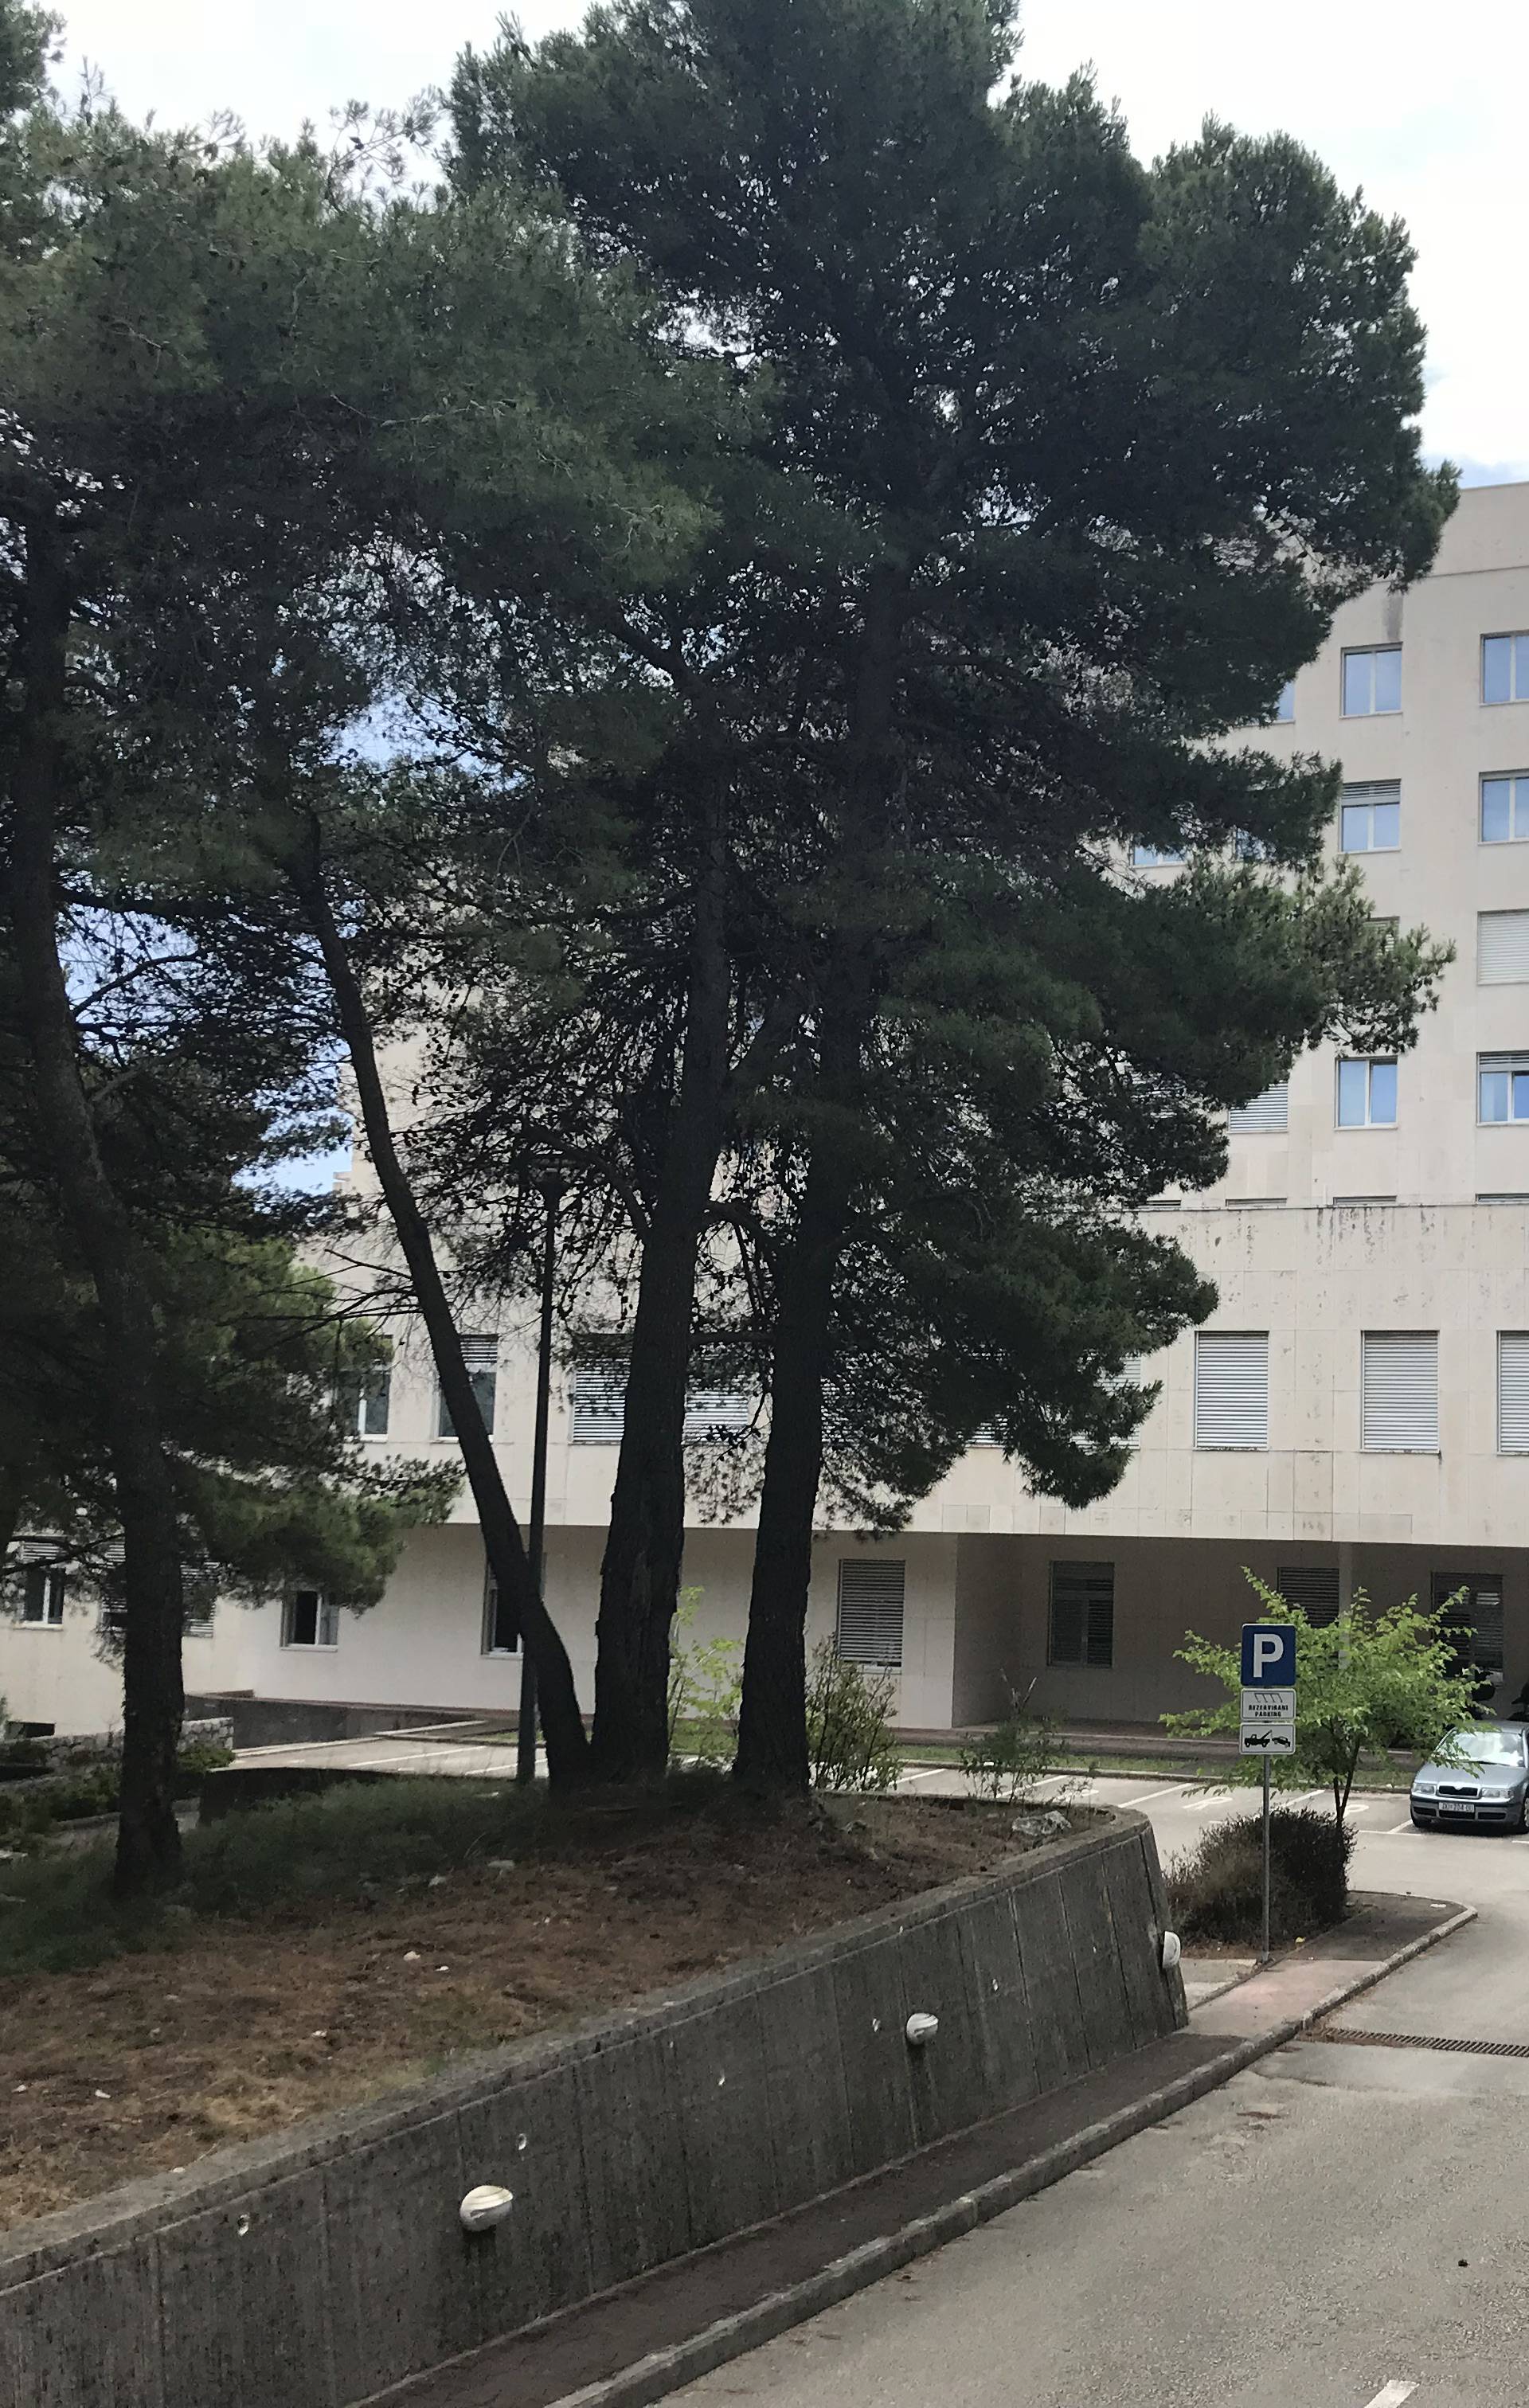 Pustoš u Dubrovniku: Sablasno prazni hodnici u bolnici straha